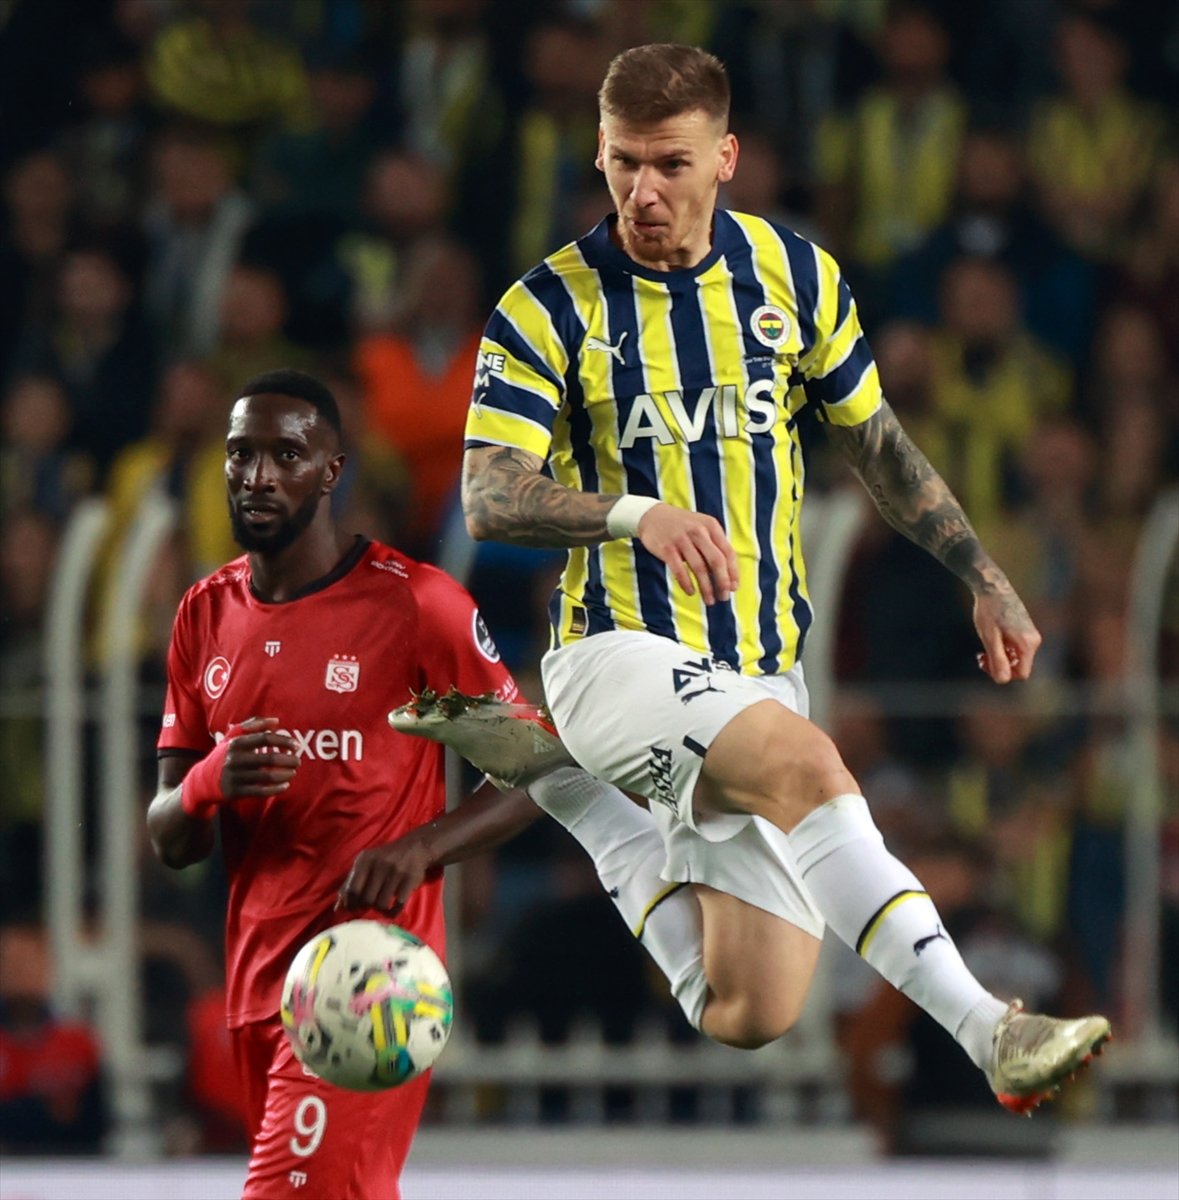 Fenerbahçe, Sivasspor u tek golle mağlup etti #4